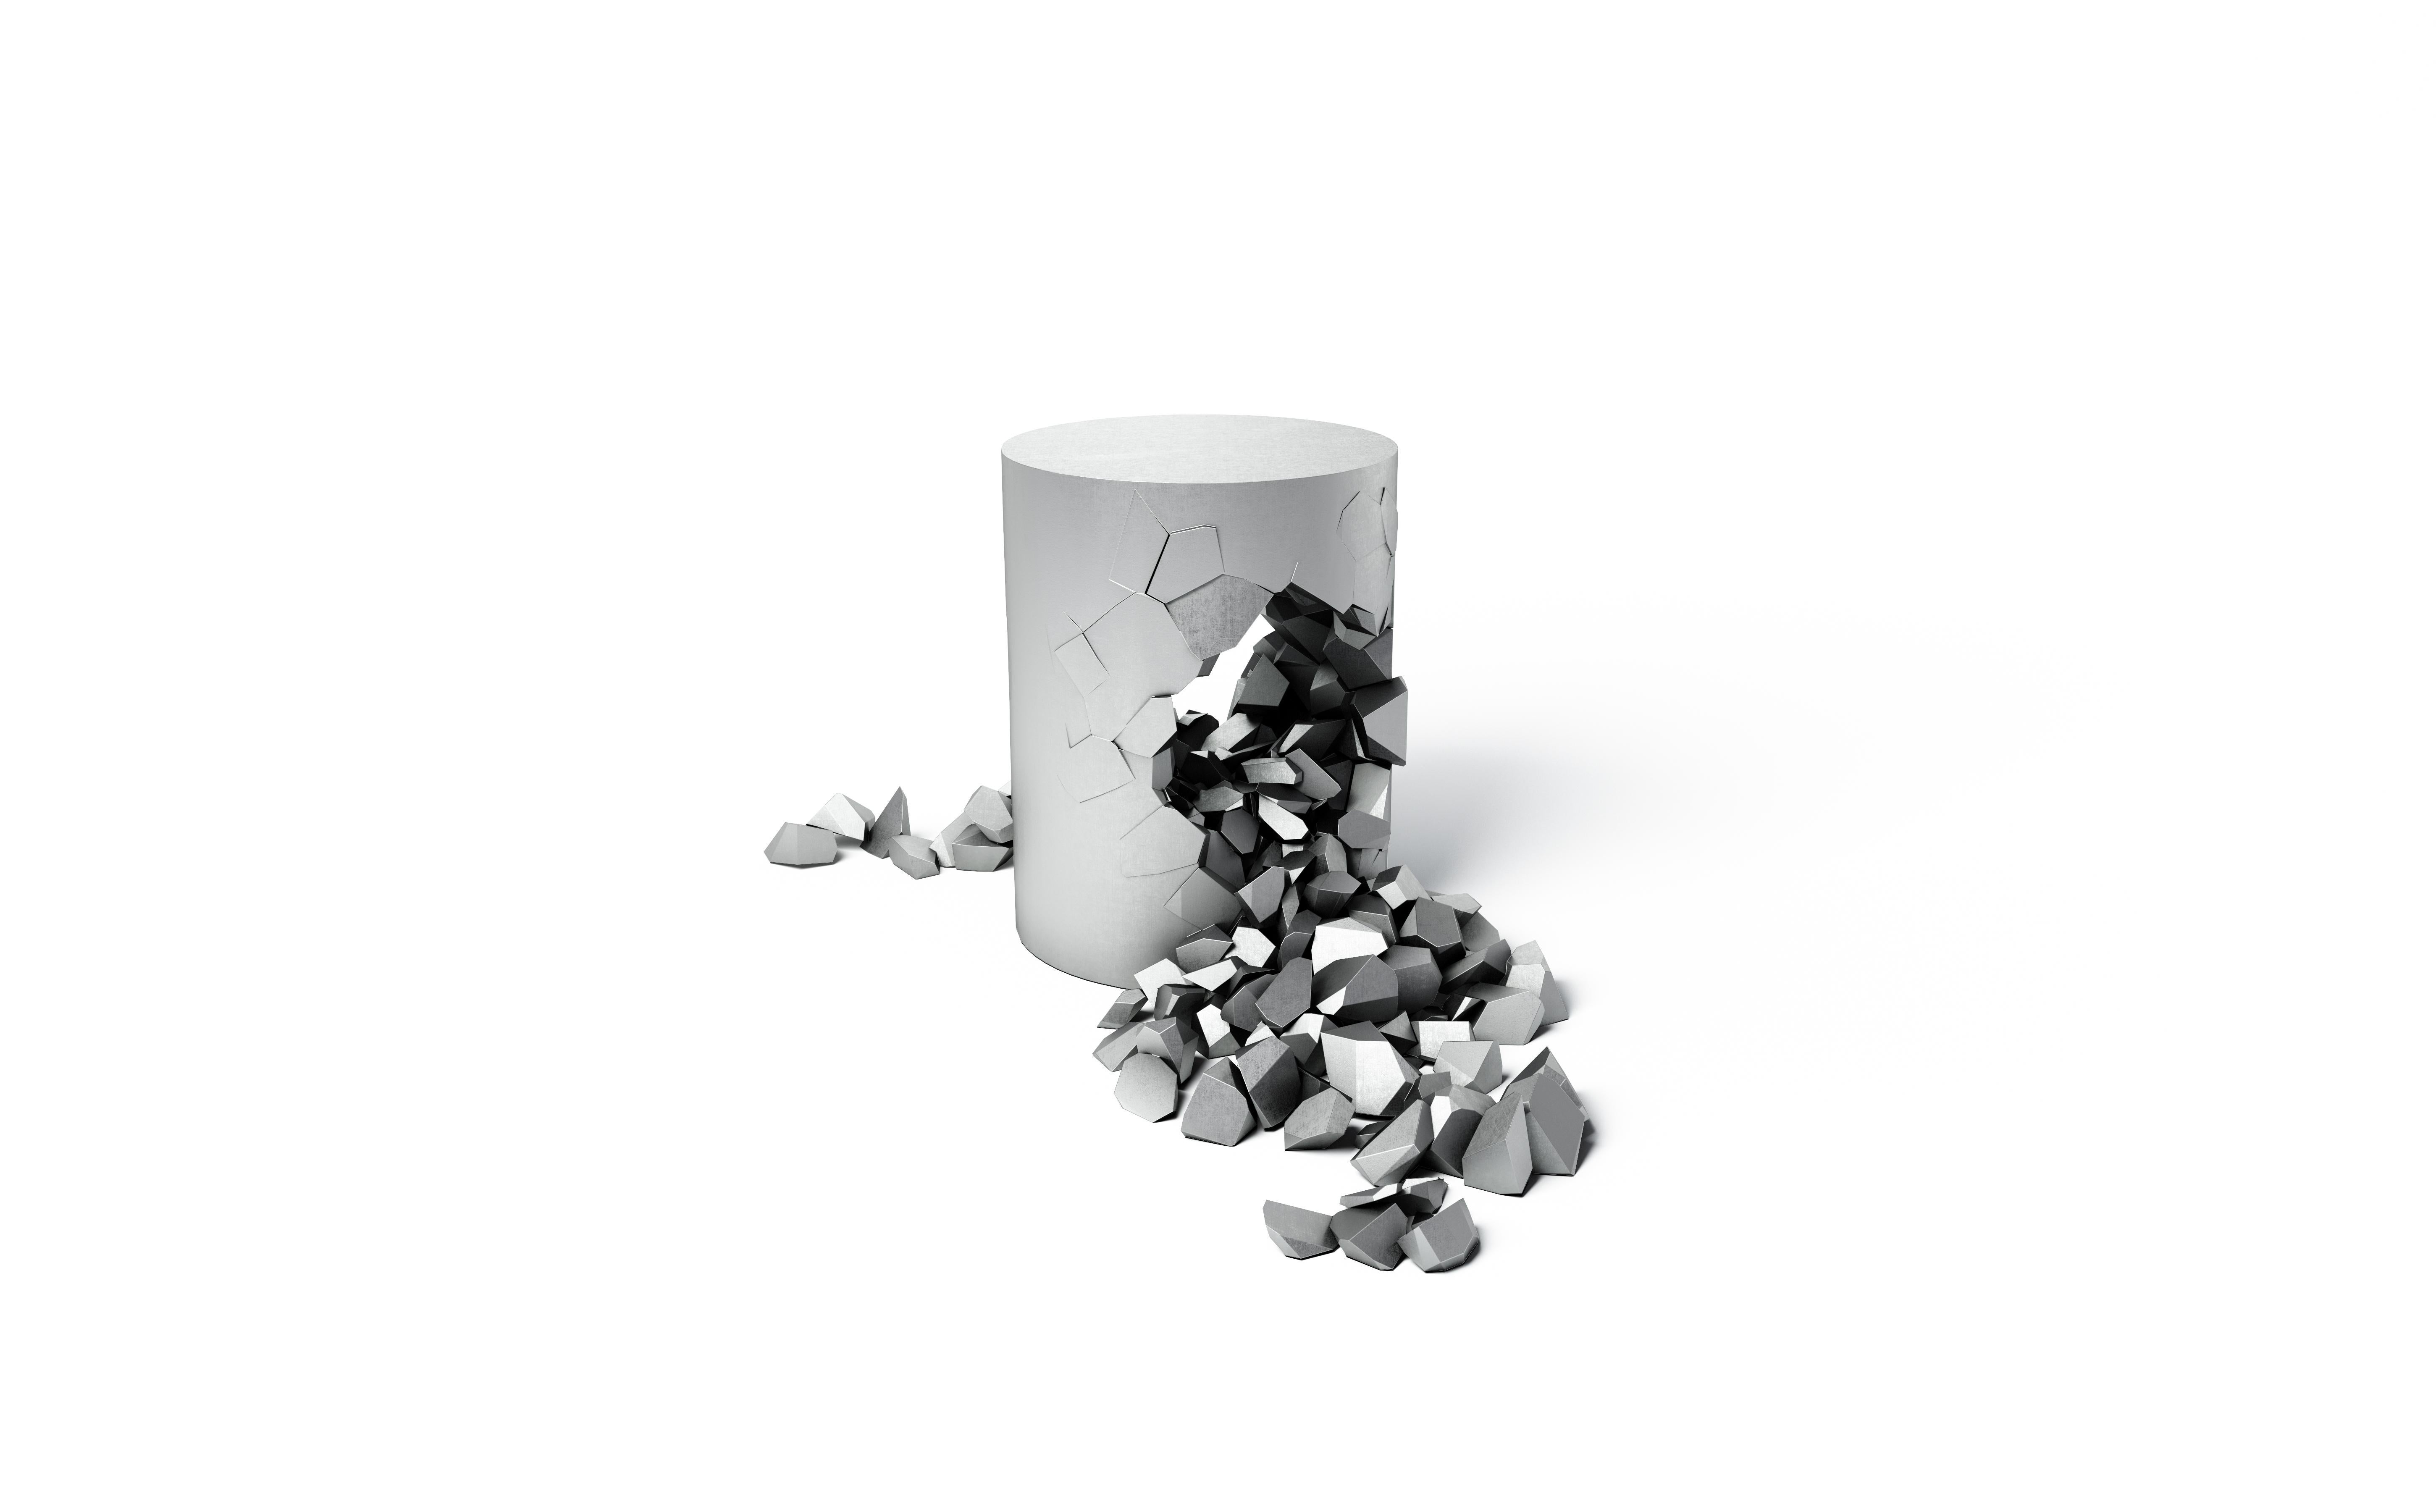 Étude du minimalisme pur, Bullet Pouf est un cylindre parfait créé en métal précieux brillant. Changez votre point de vue pour révéler une beauté inattendue en vous. Le pouf Bullet est une pièce entièrement fonctionnelle qui mesure 45 cm de haut.